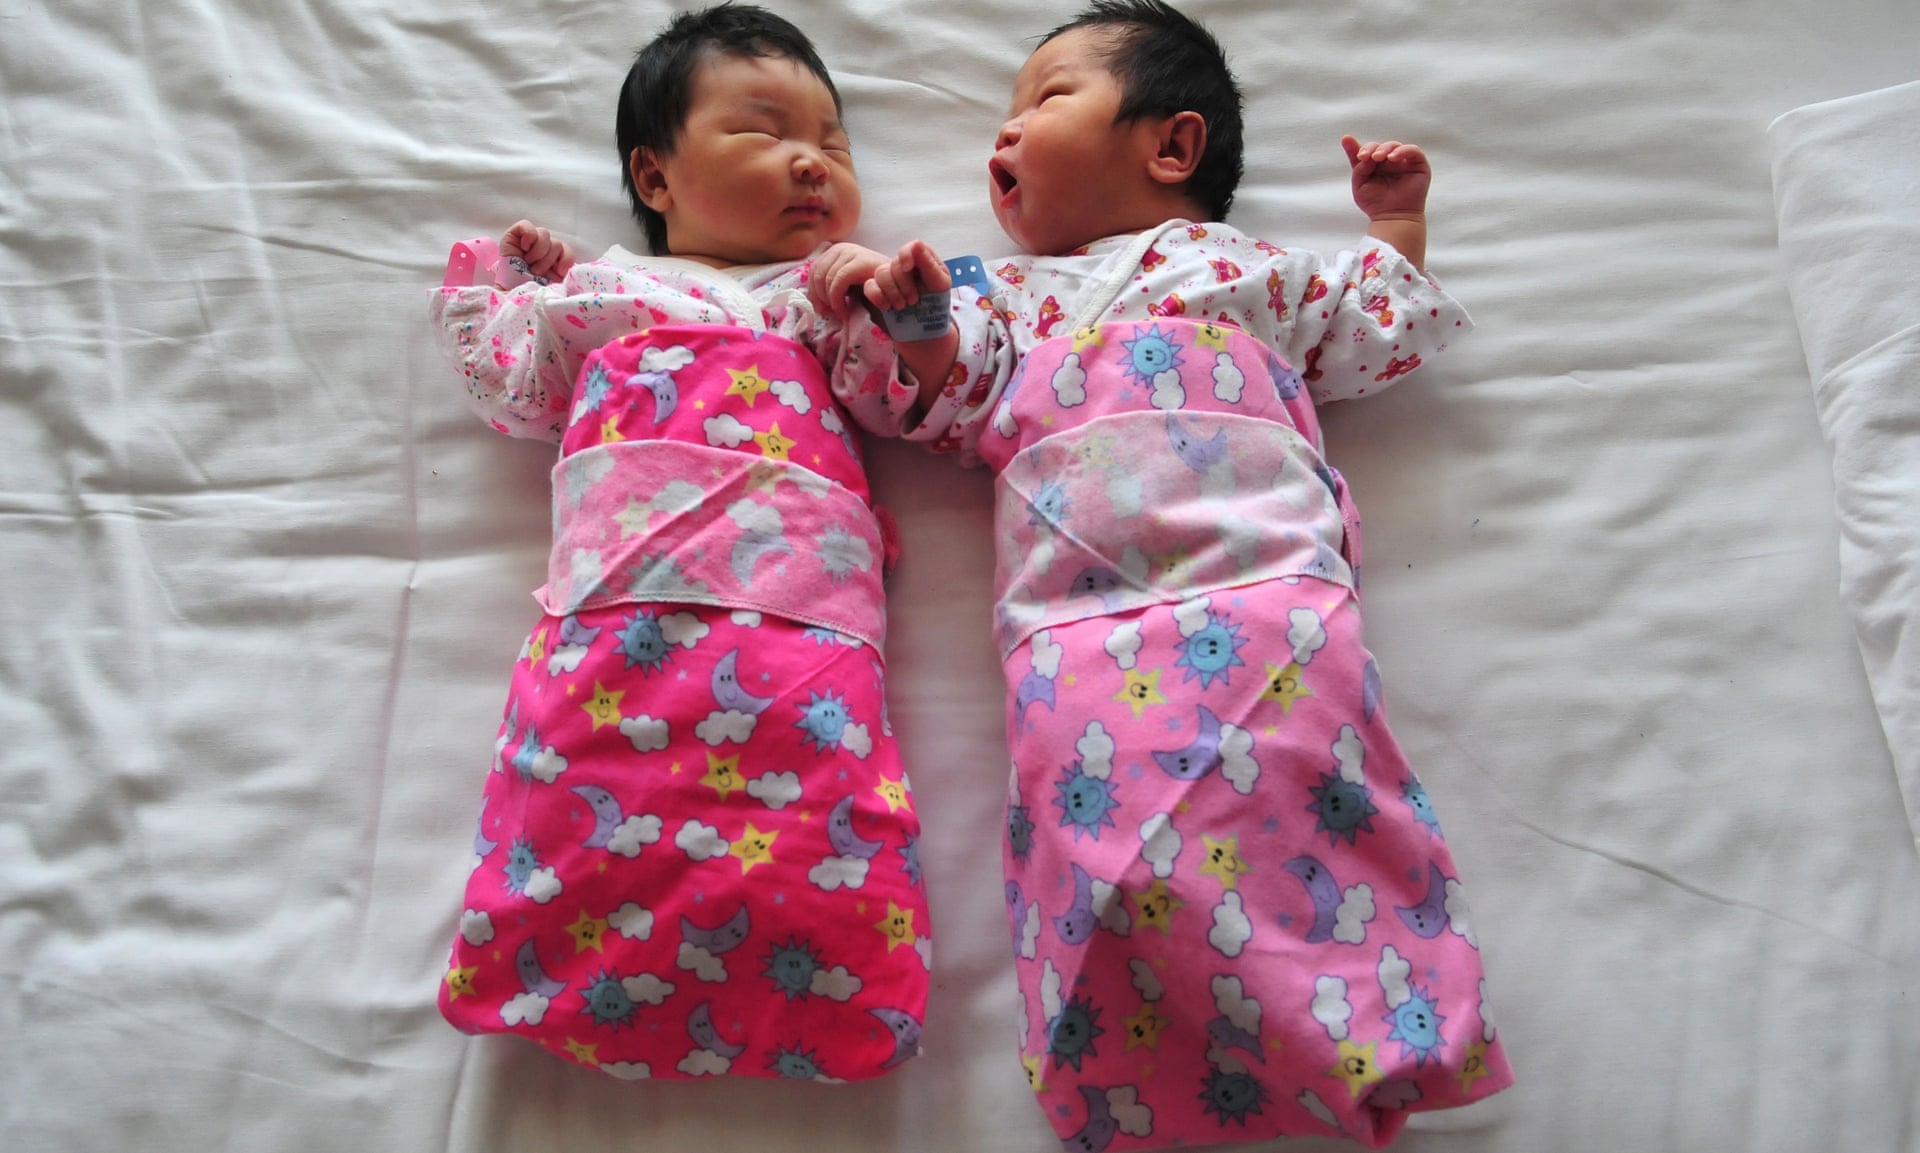 Nhiều gia đình ở Trung Quốc chỉ sinh một con do các nguyên nhân chi phí giáo dục và nhà ở đắt đỏ - Ảnh: AFP/Getty Images